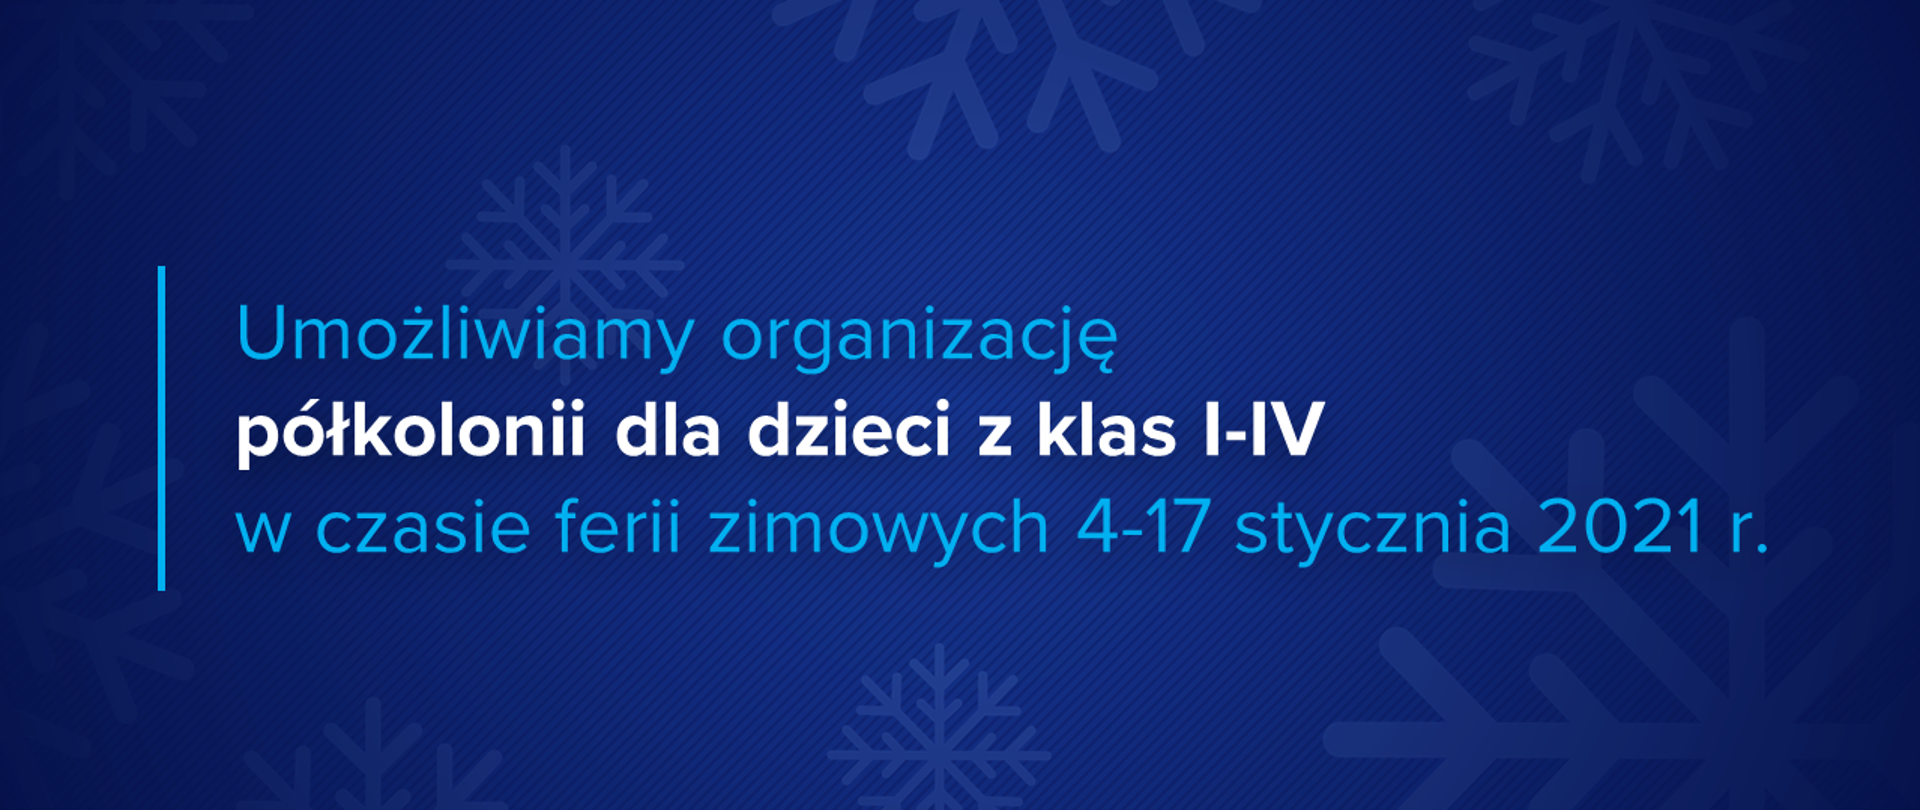 Niebieska grafika z płatkami śniegu i tekstem "Umożliwiamy organizację półkolonii dla dzieci z klas I-IV w czasie ferii zimowych 4-17 stycznia 2021 r."